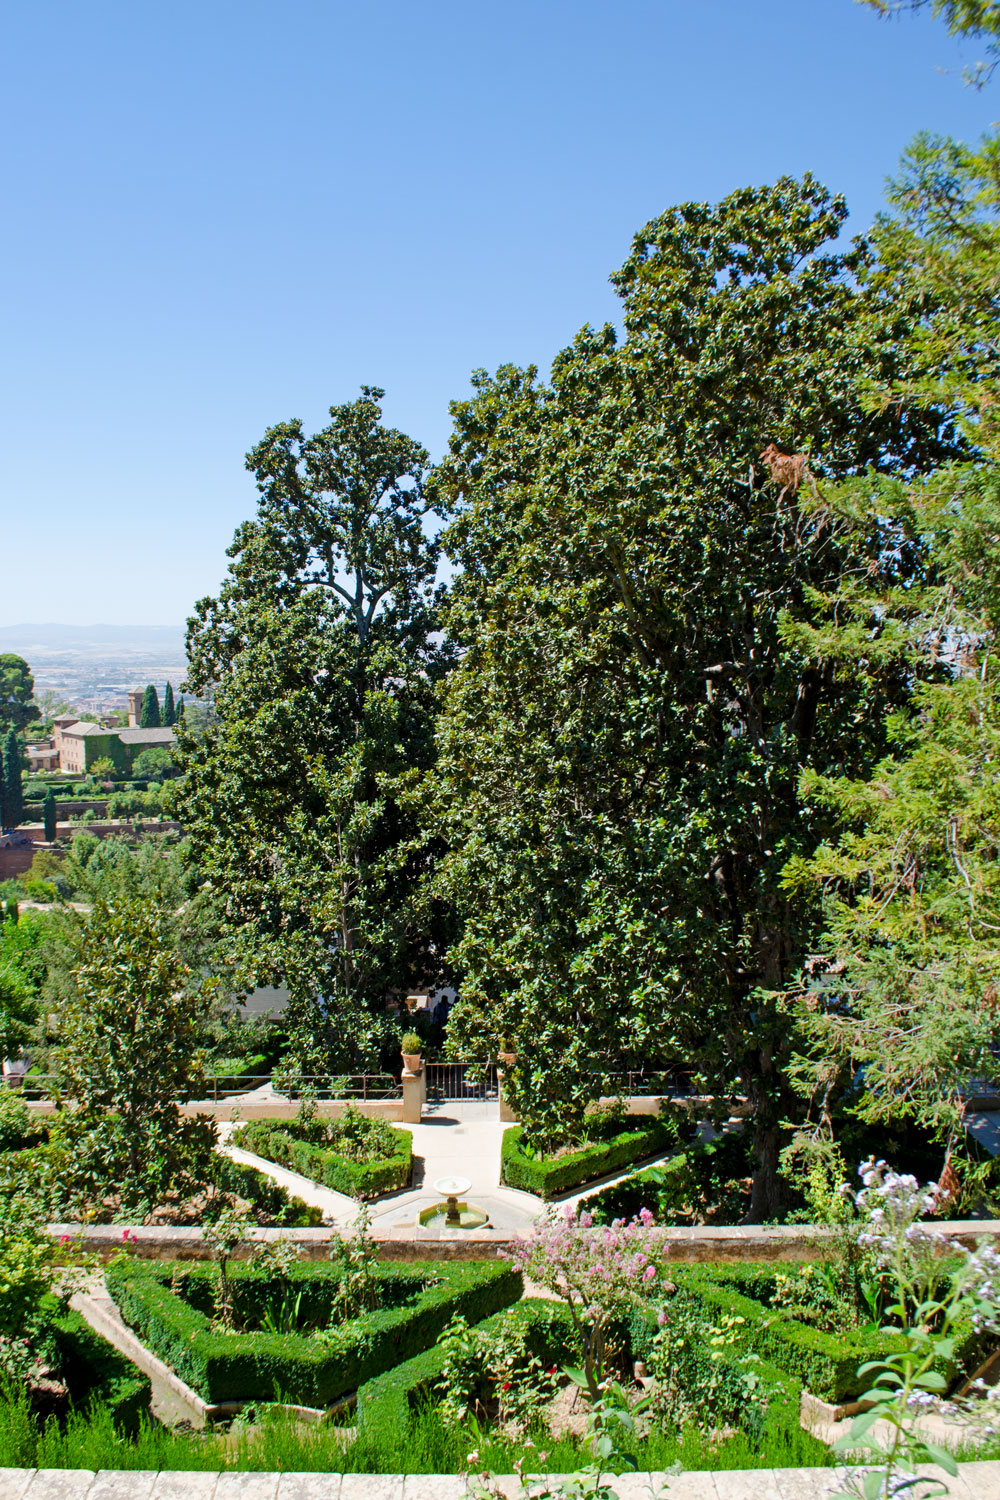 [unbezahlte werbung] La Alhambra - Was man für einen Besuch wissen muss | Die Palast-Gärten